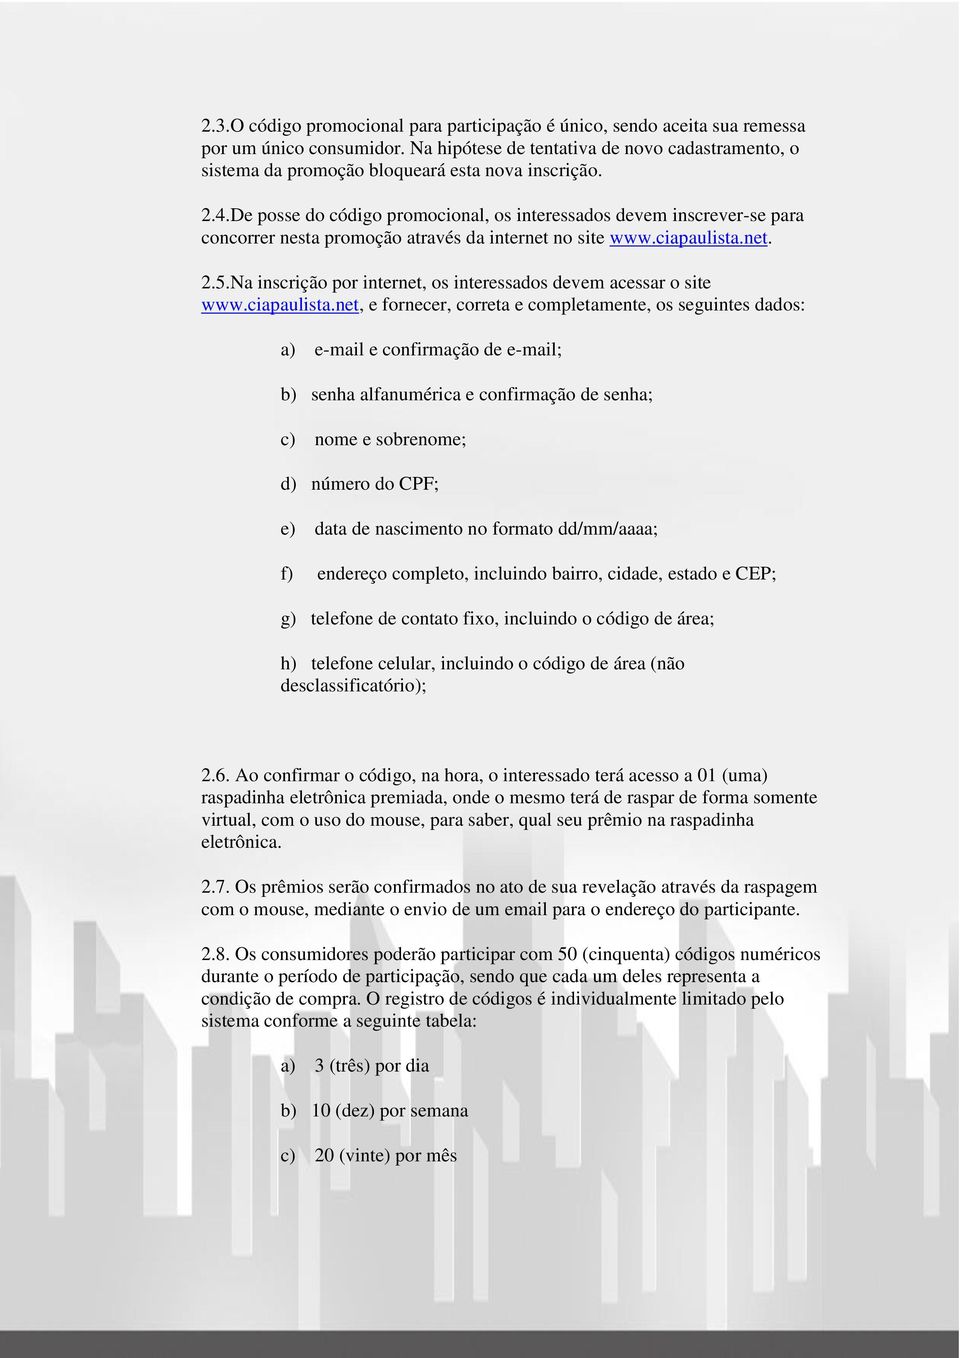 De posse do código promocional, os interessados devem inscrever-se para concorrer nesta promoção através da internet no site www.ciapaulista.net. 2.5.